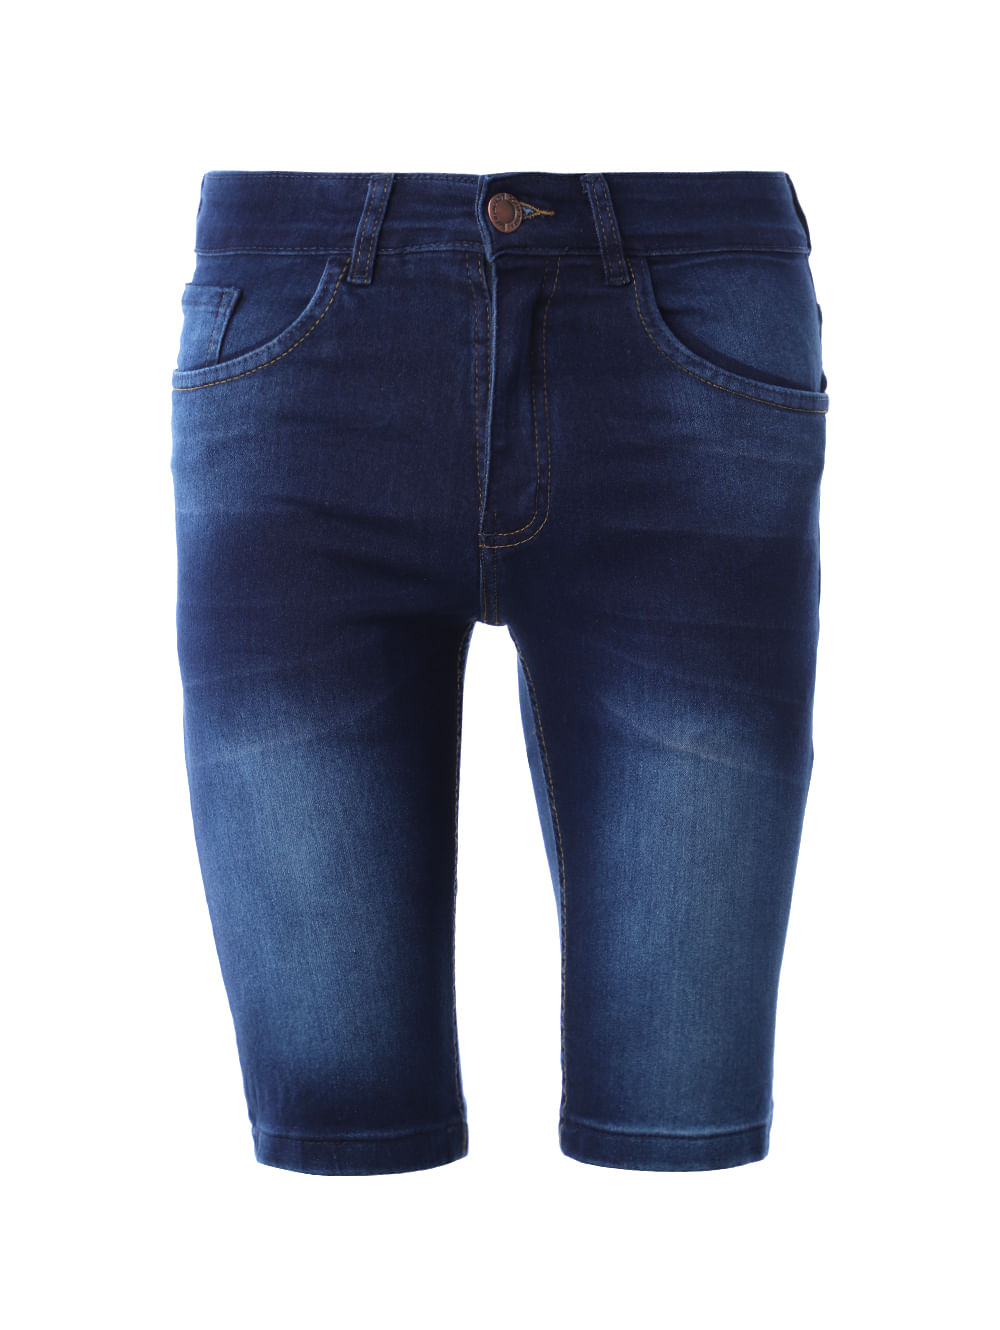 Shorts Jeans Curto Feminino Premium Blue Medium Destroyed - Azul